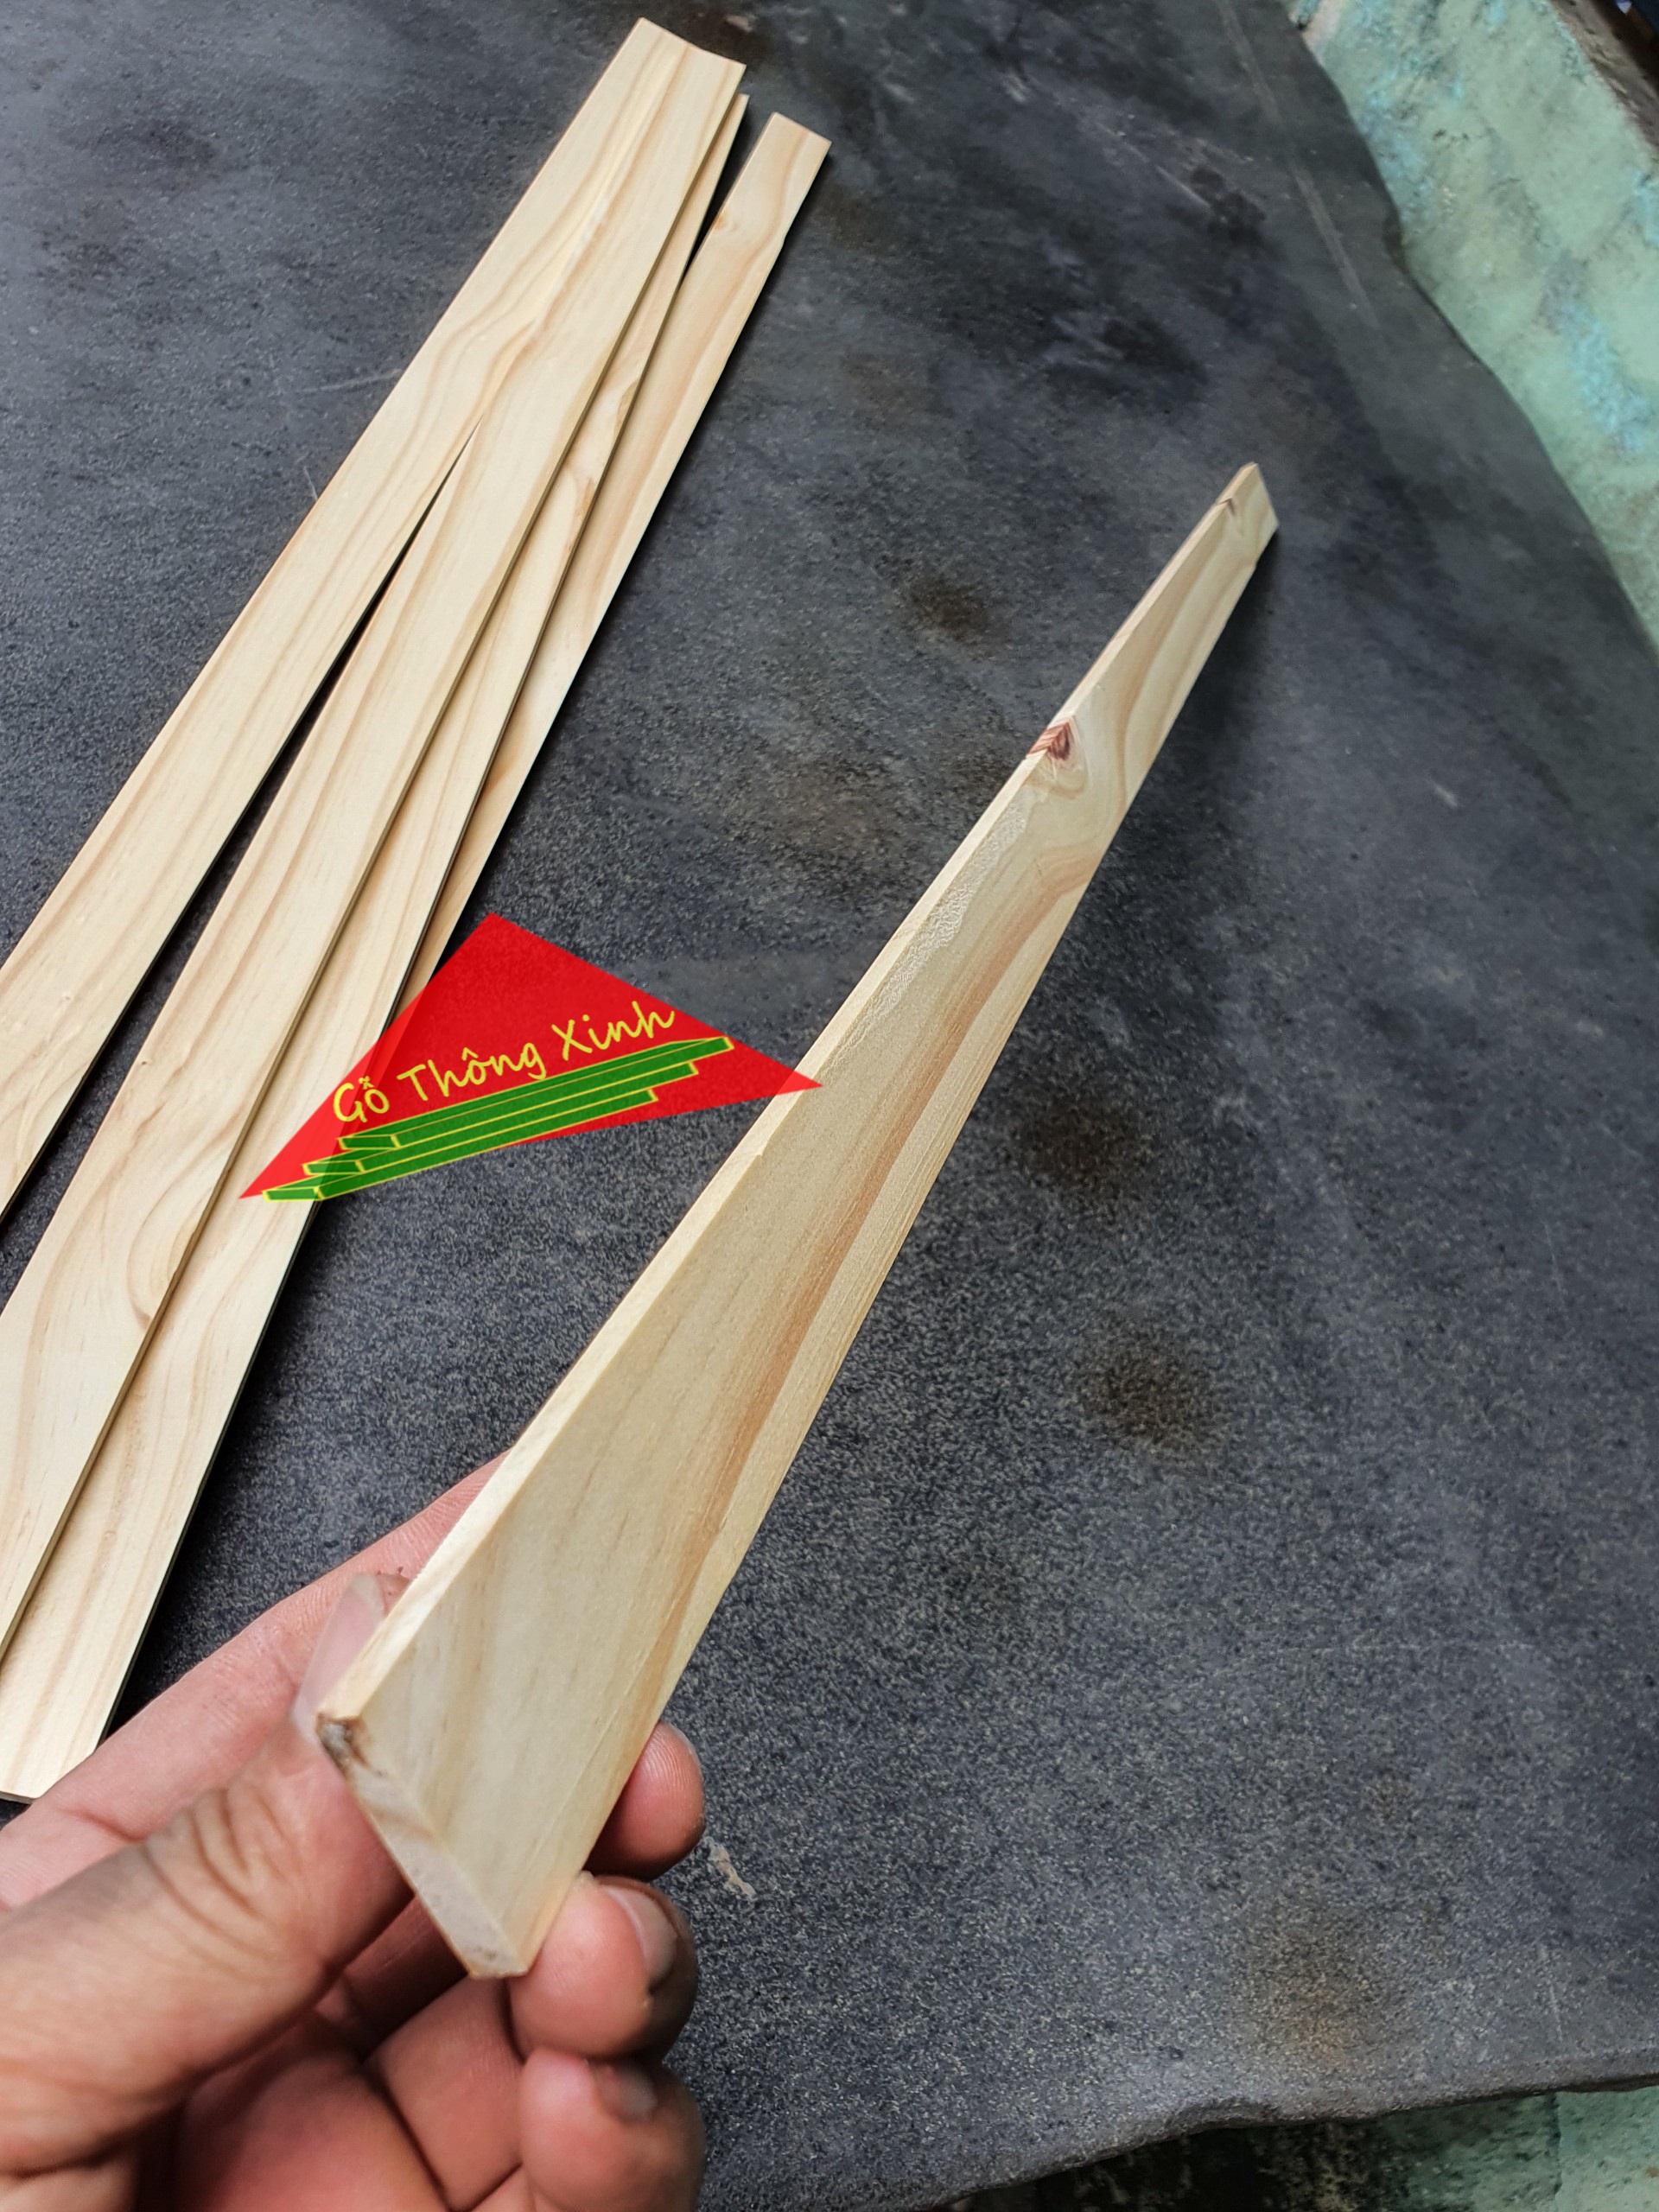 Thanh gỗ thông dày 1cm rộng 3cm dài 80 dùng làm nẹp chỉ, làm thùng gỗ decord, đóng chuồng thú cưng, DIY